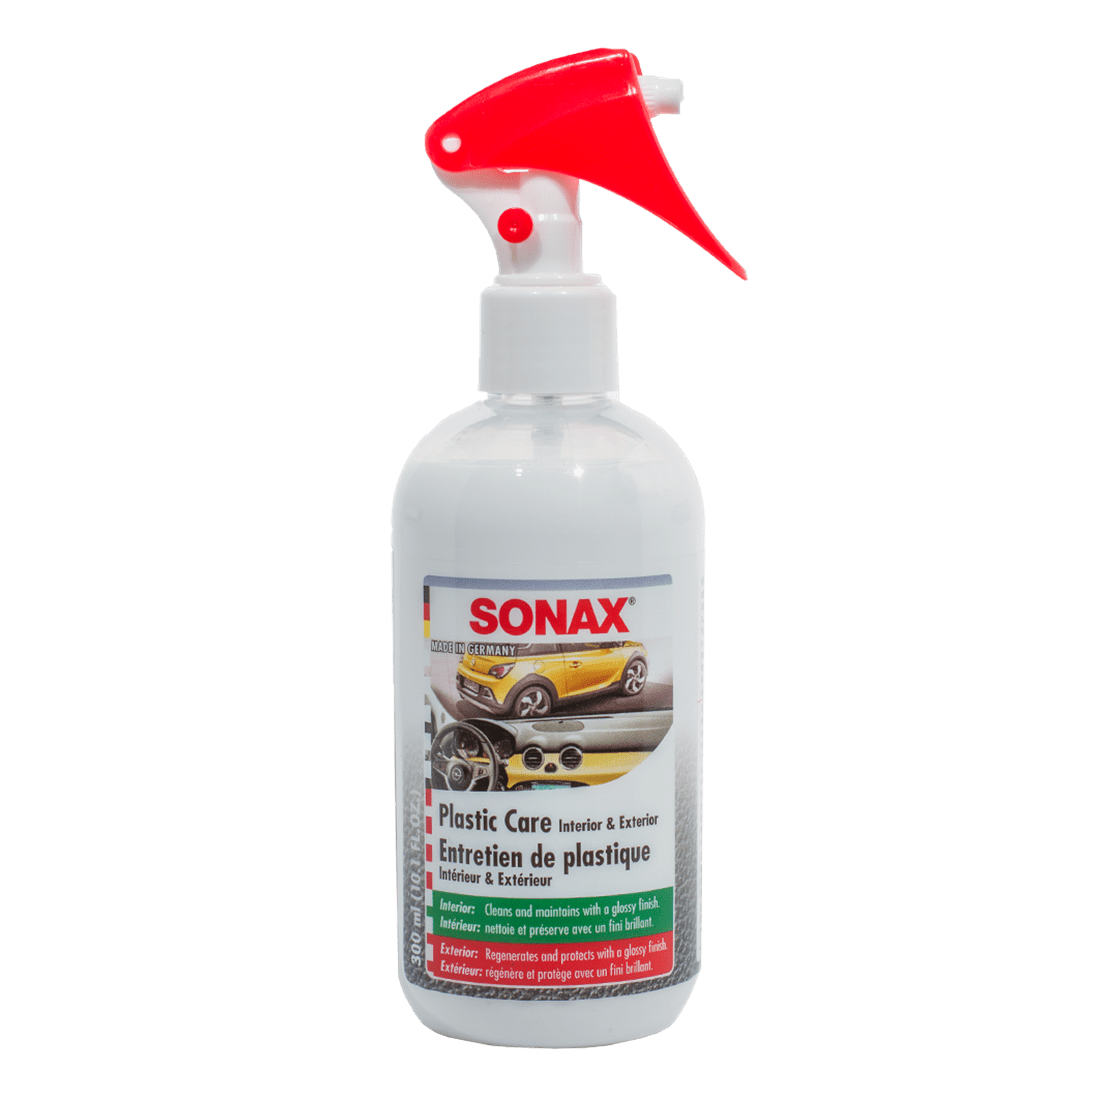 SONAX Plastic Care 300 ml ��� Interior/Exterior